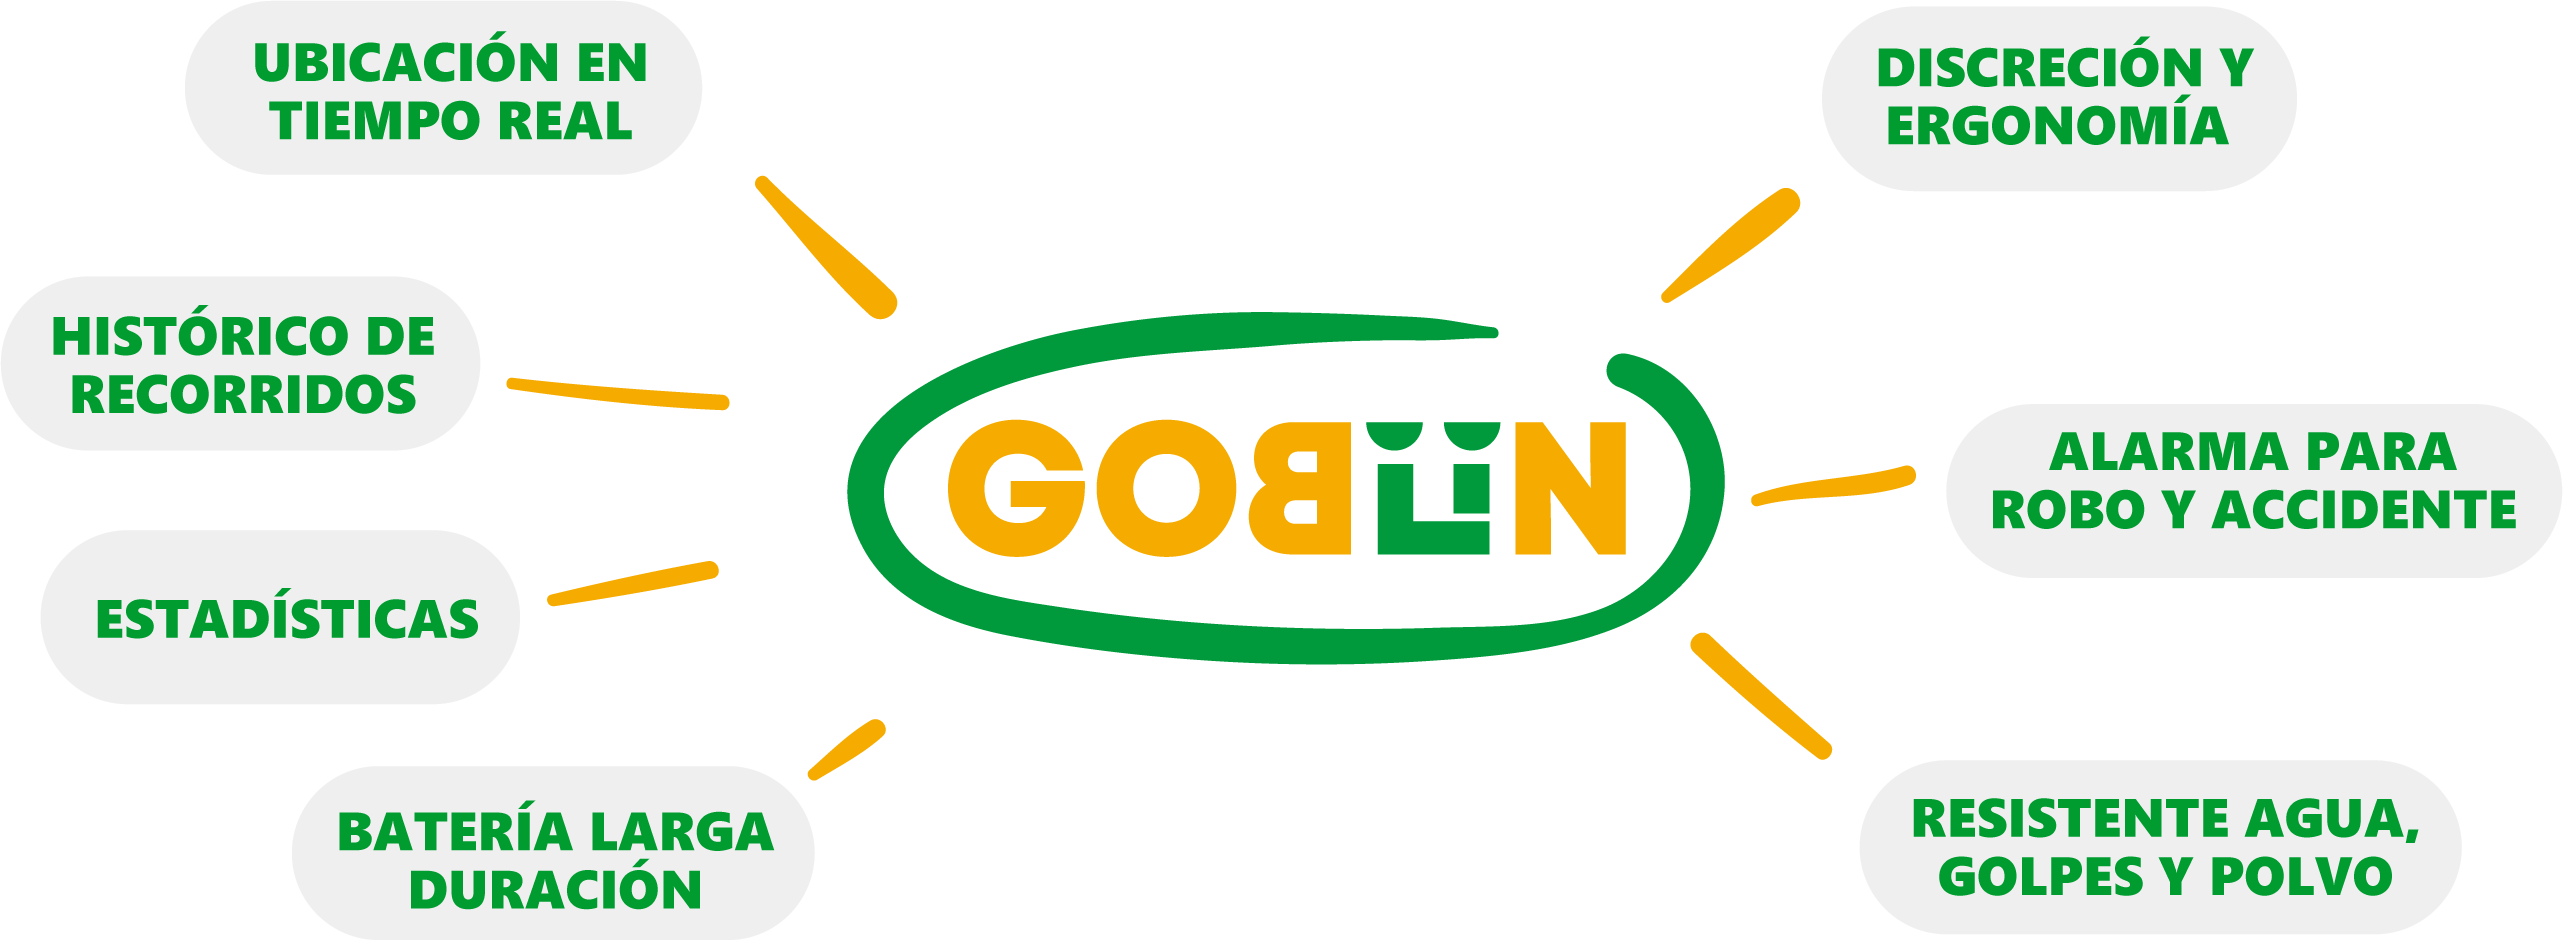 GOBLIN-PASOS